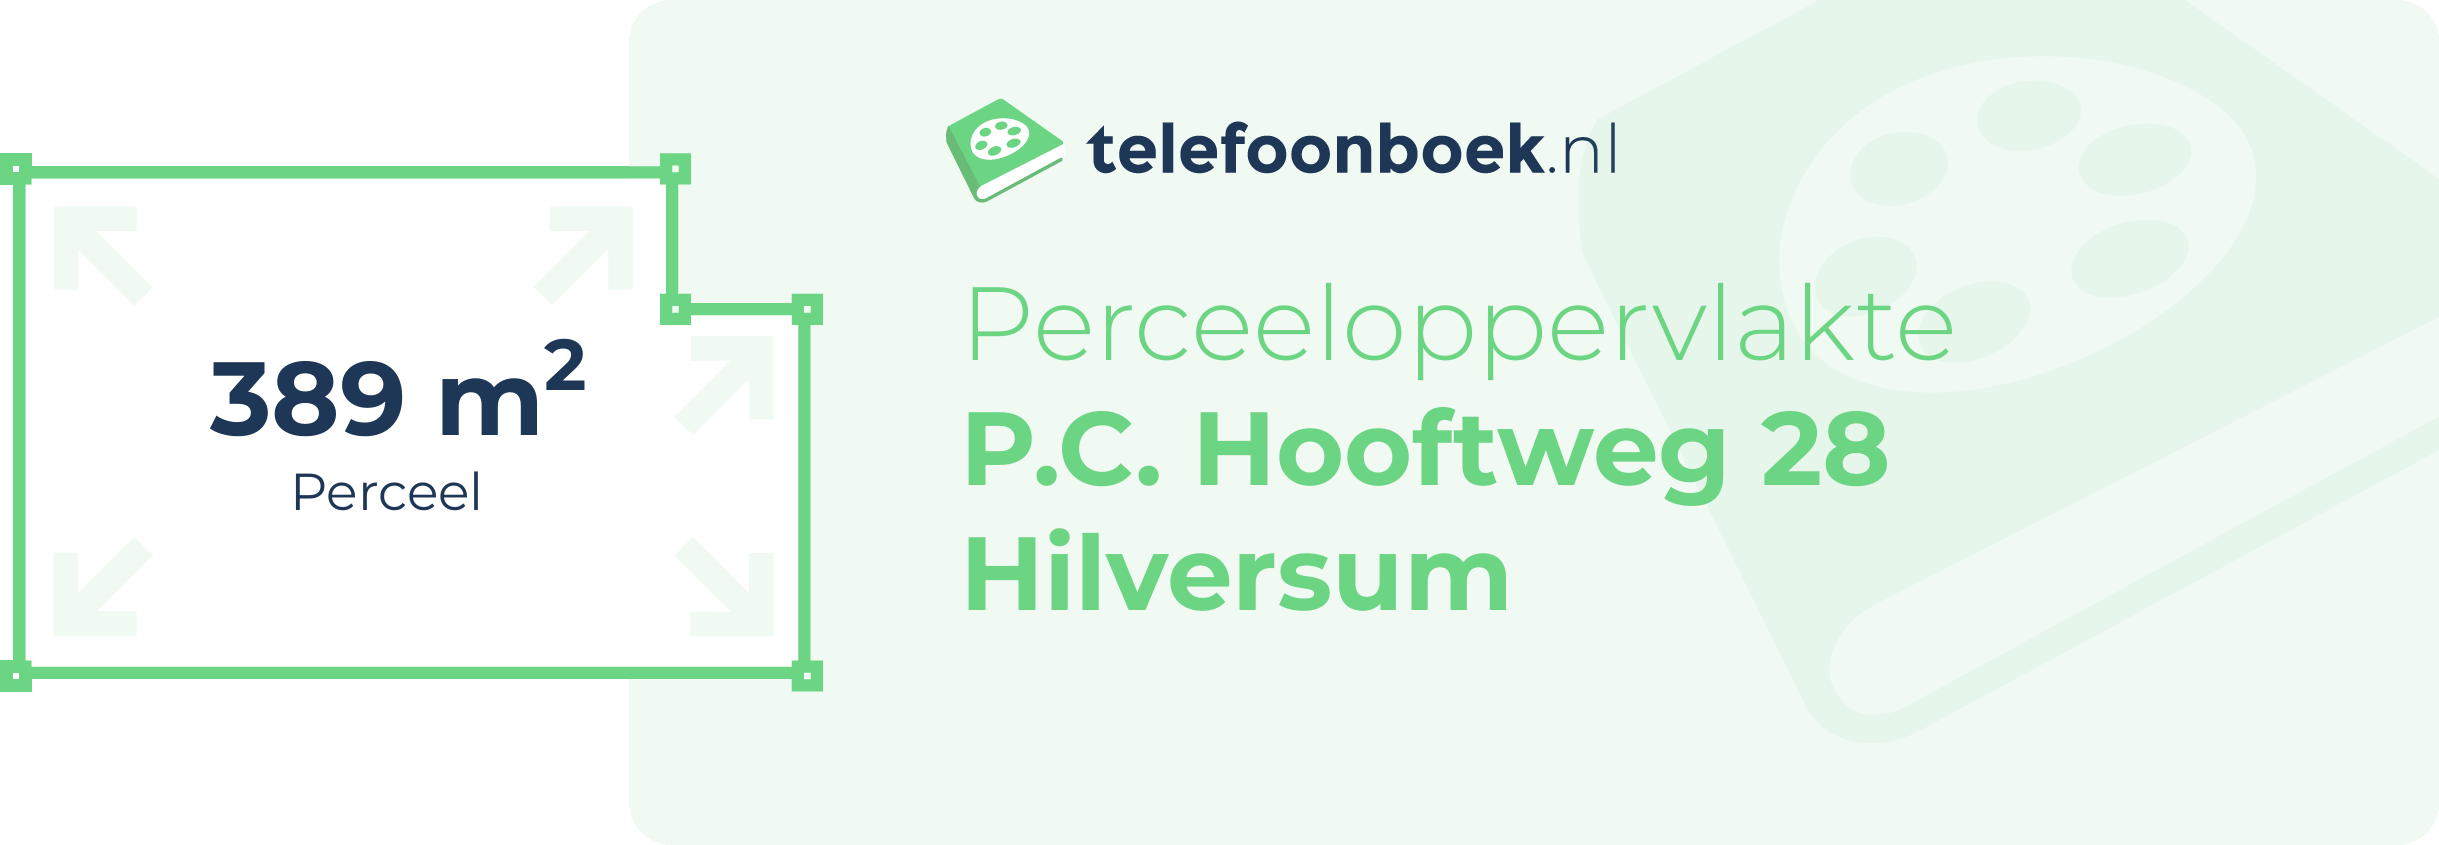 Perceeloppervlakte P.C. Hooftweg 28 Hilversum